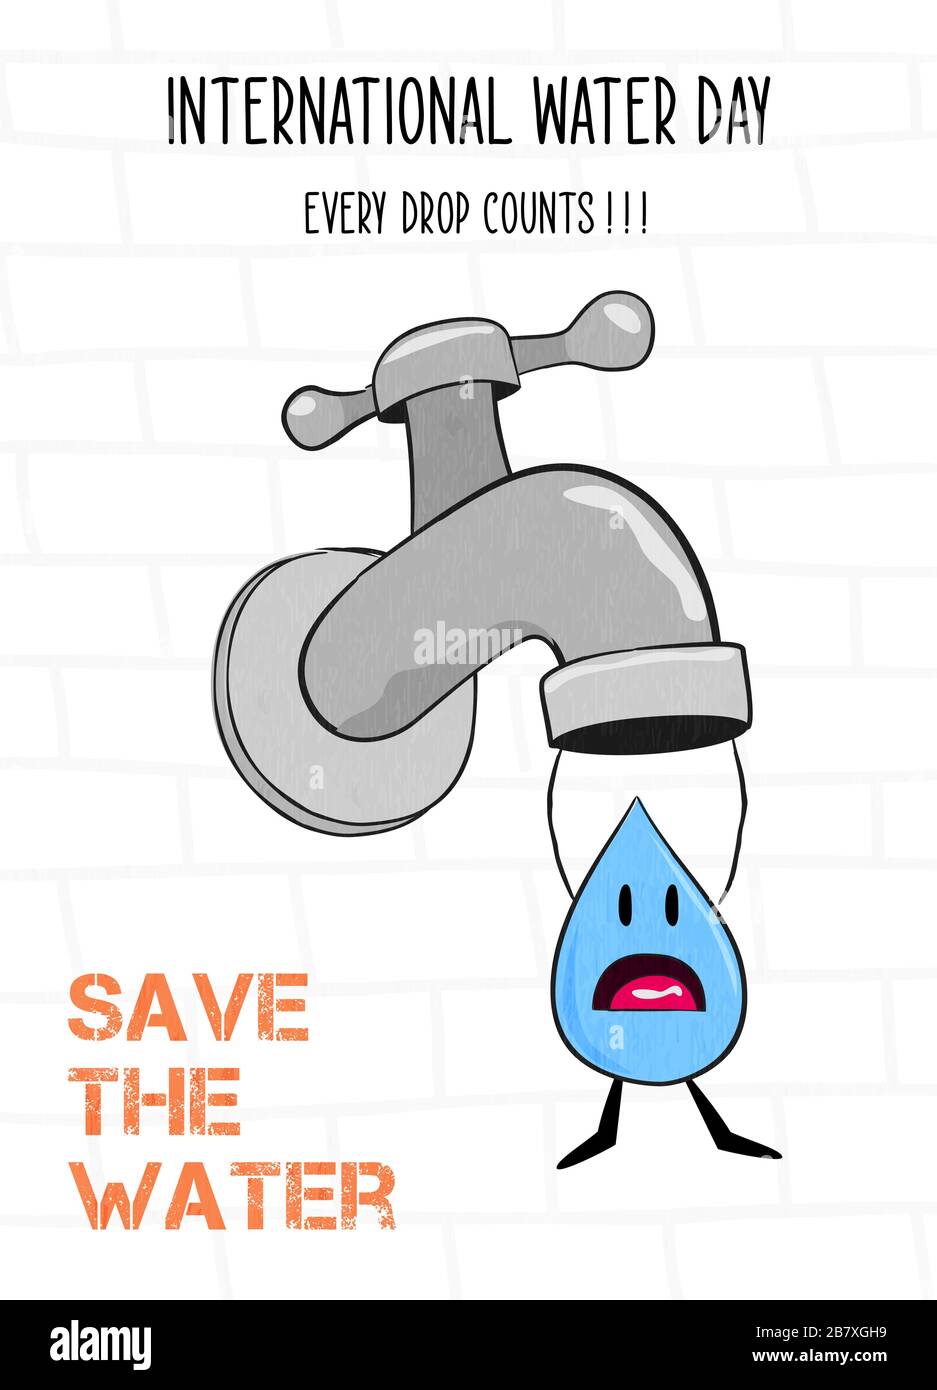 Internationale Grußkarte für den Wassertag mit Flüssigtropfenarakter für die Reduzierung von Hausmüll und die Naturpflege. Kampagnenveranstaltung zum 22. märz, Version Stock Vektor